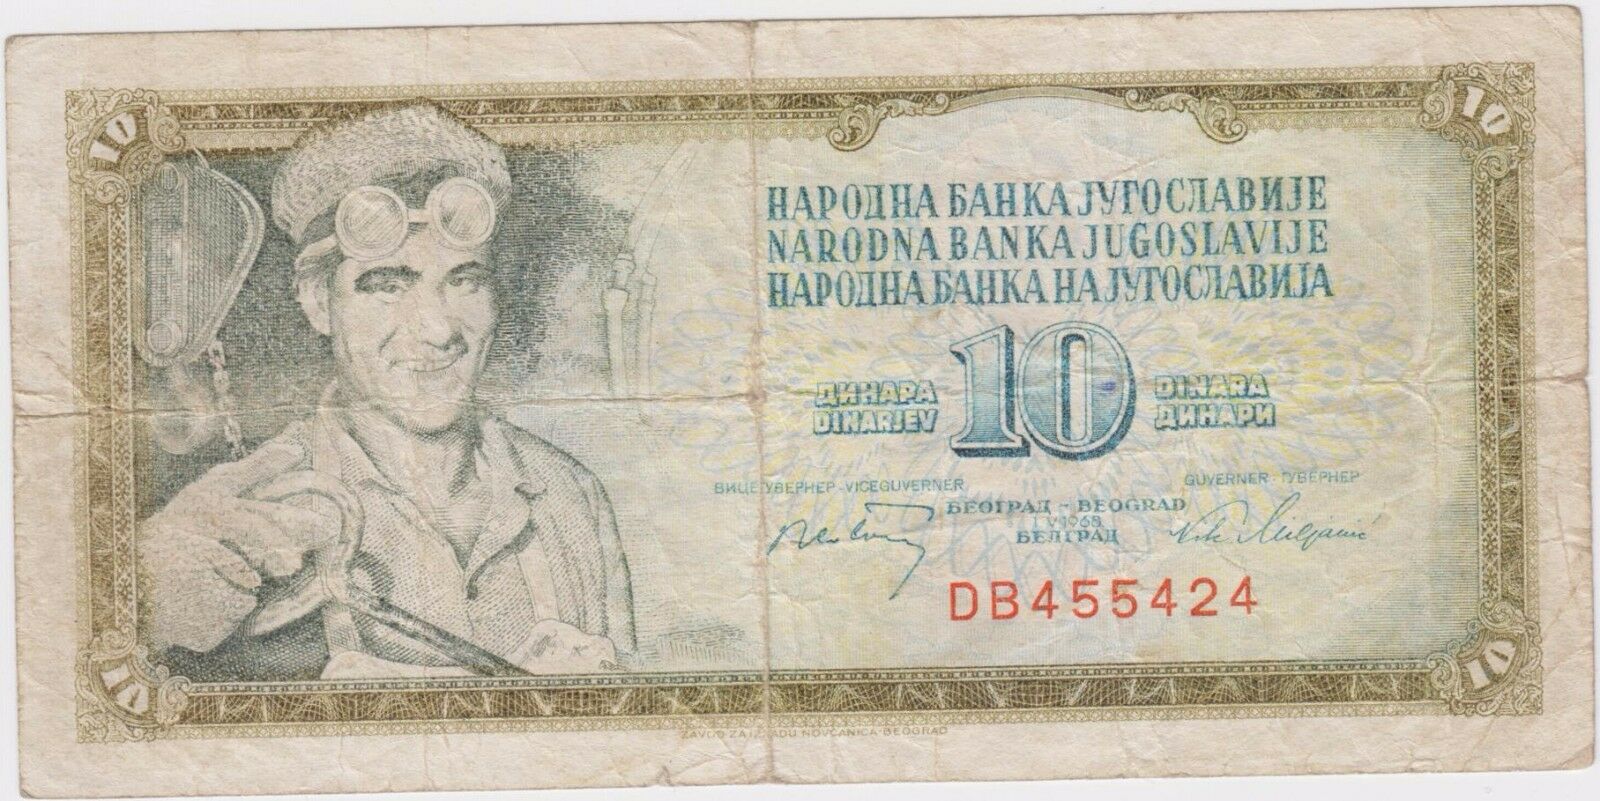 Erorr Banknote - Yugoslavia Serbia 10 Dinara 1968 -lack Of Color On The Banknote